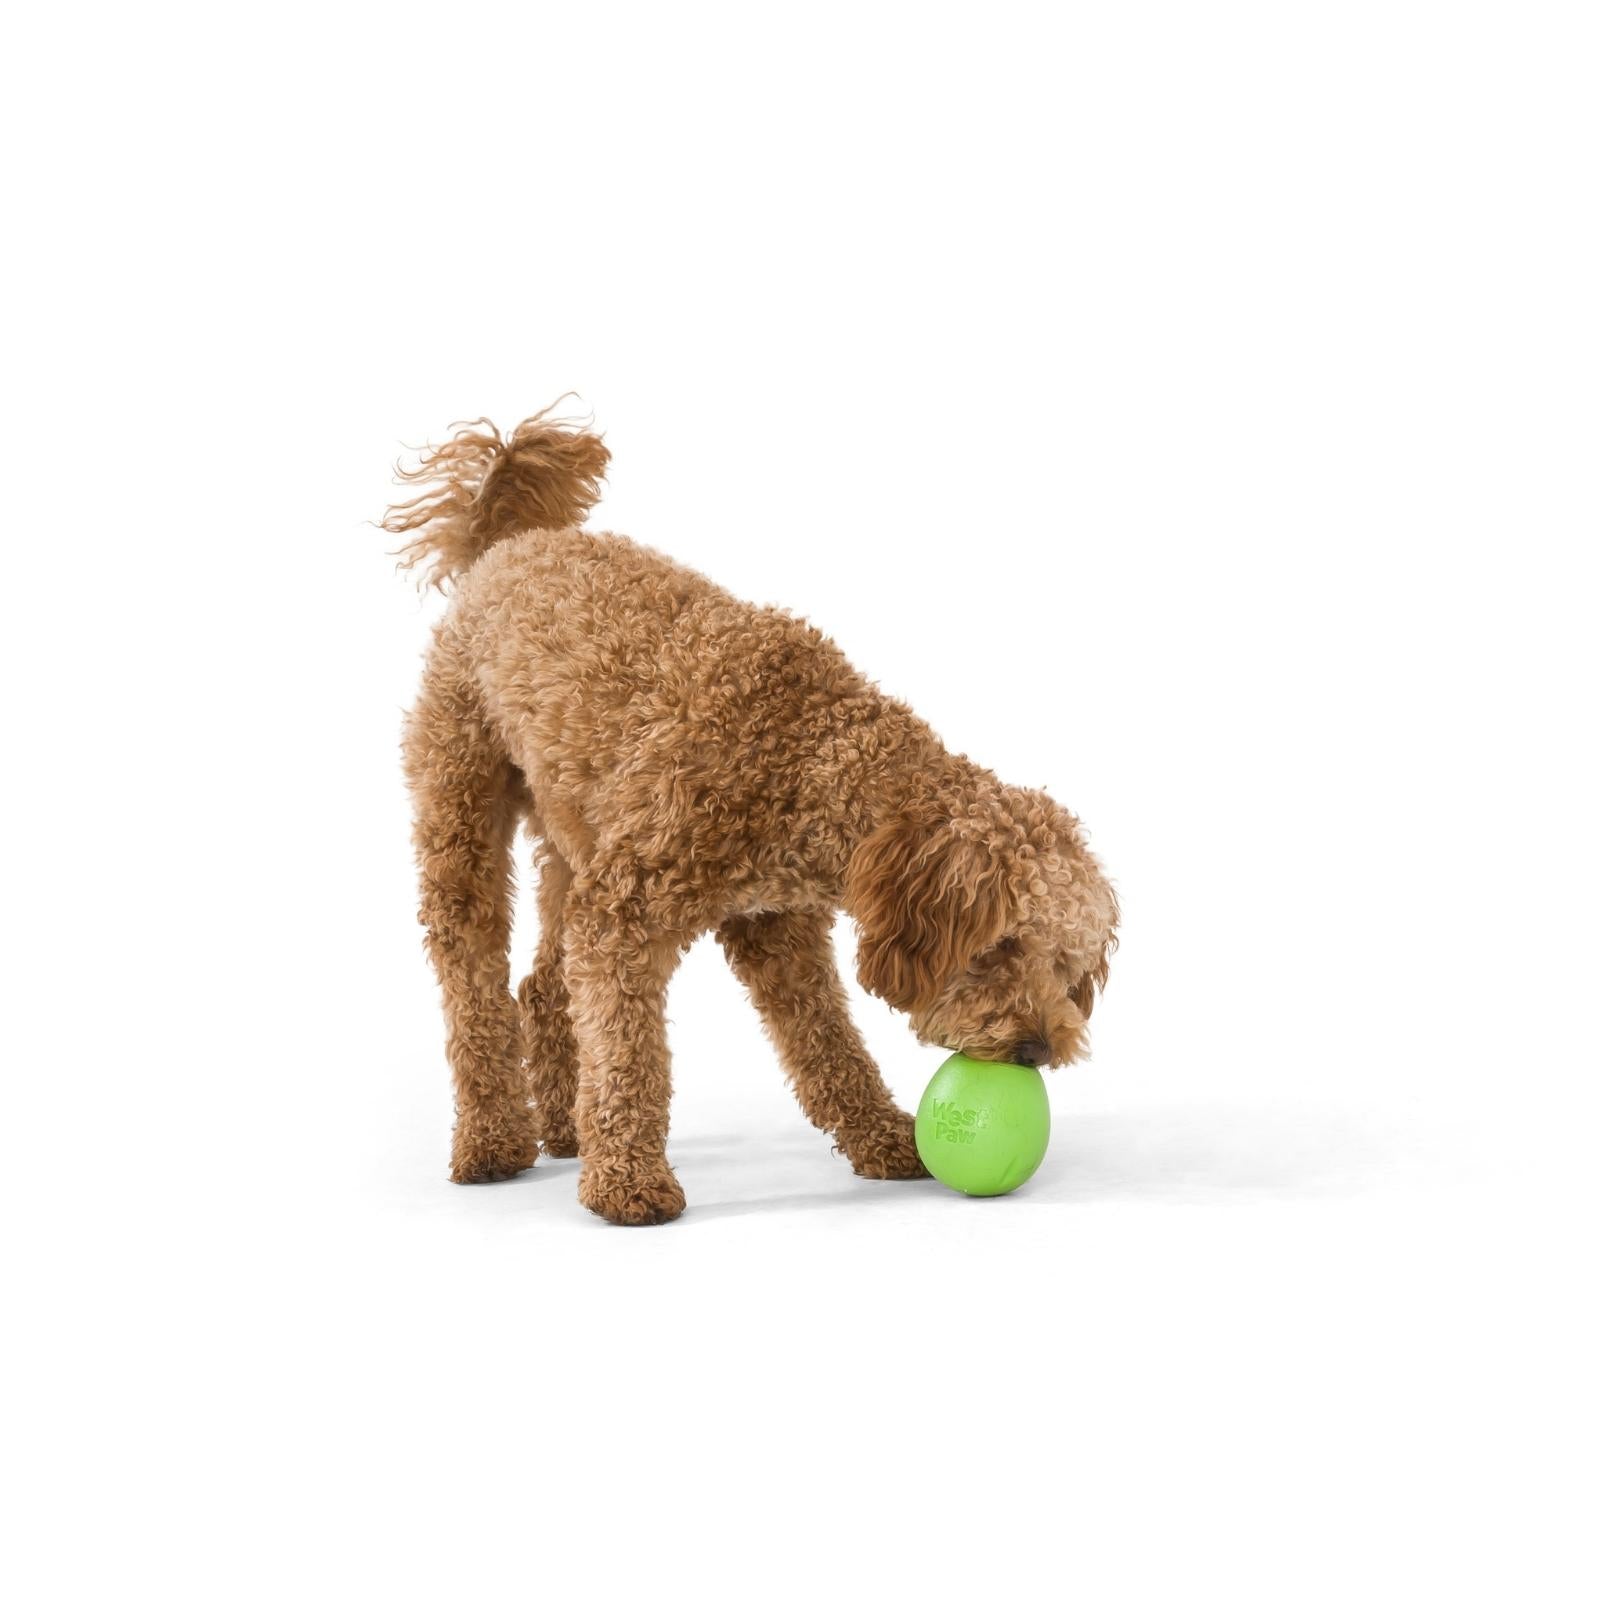 RUMBL de West Paw® color Morado - Juguete Dispensador de Premios y Croquetas para Perros